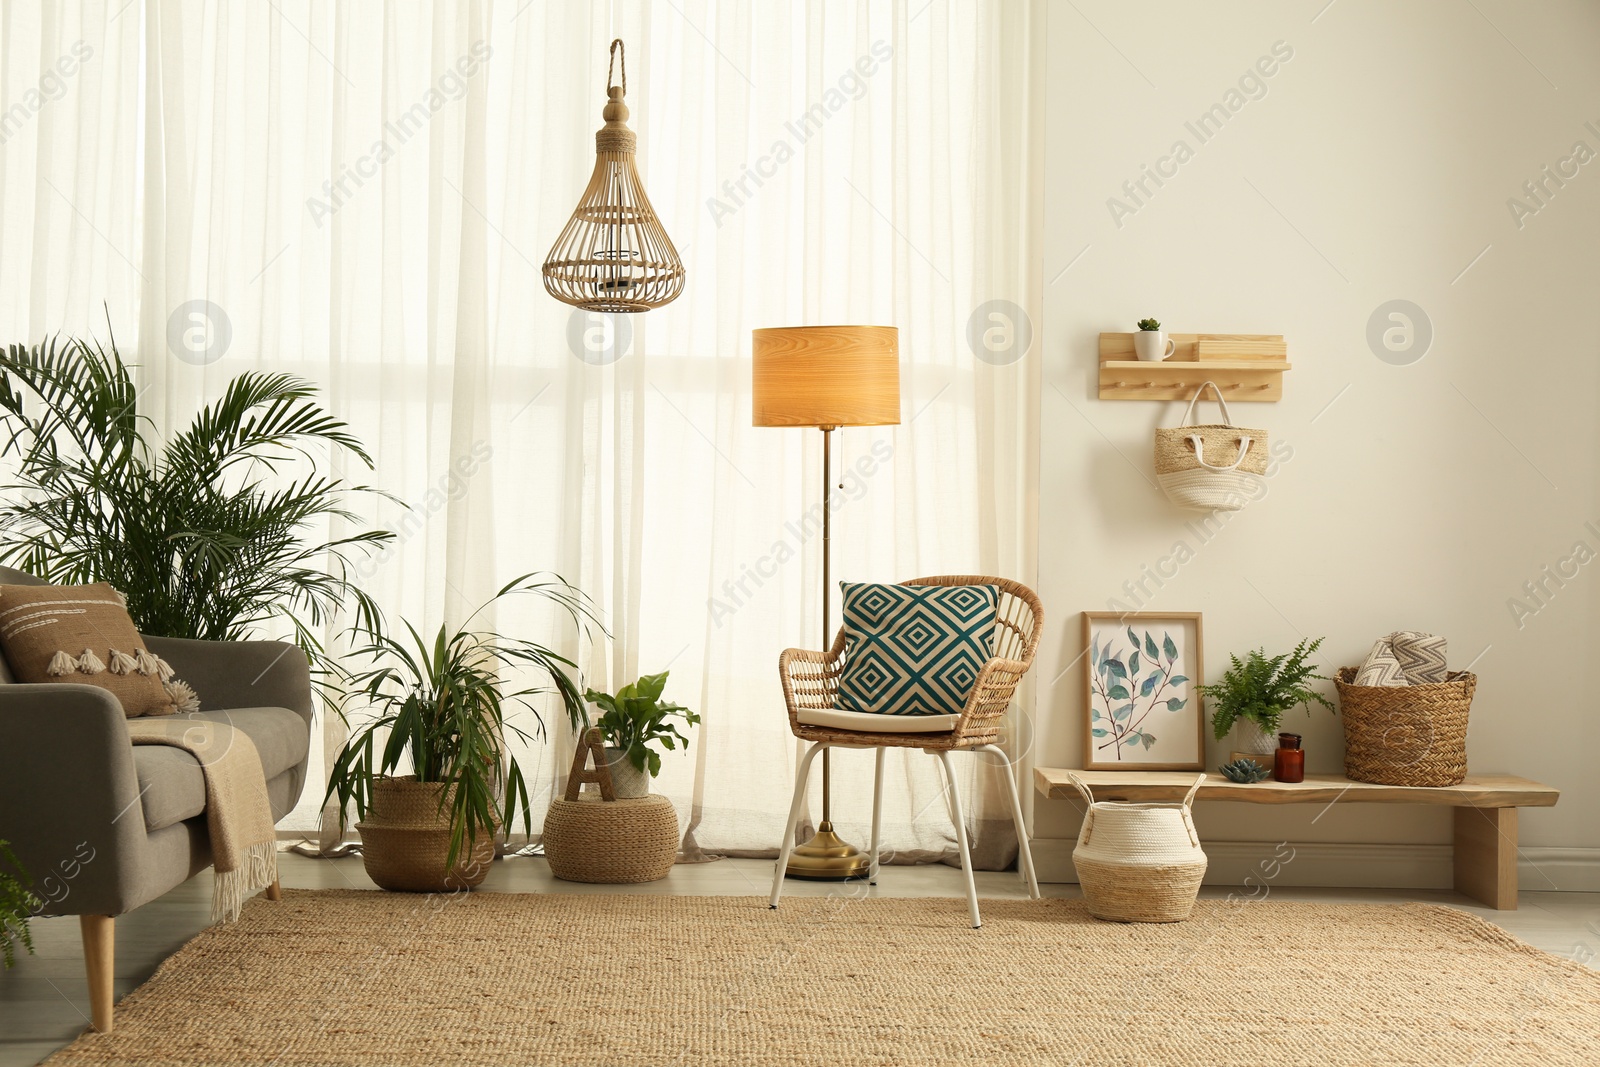 Photo of Light living room with boho decor. Interior design